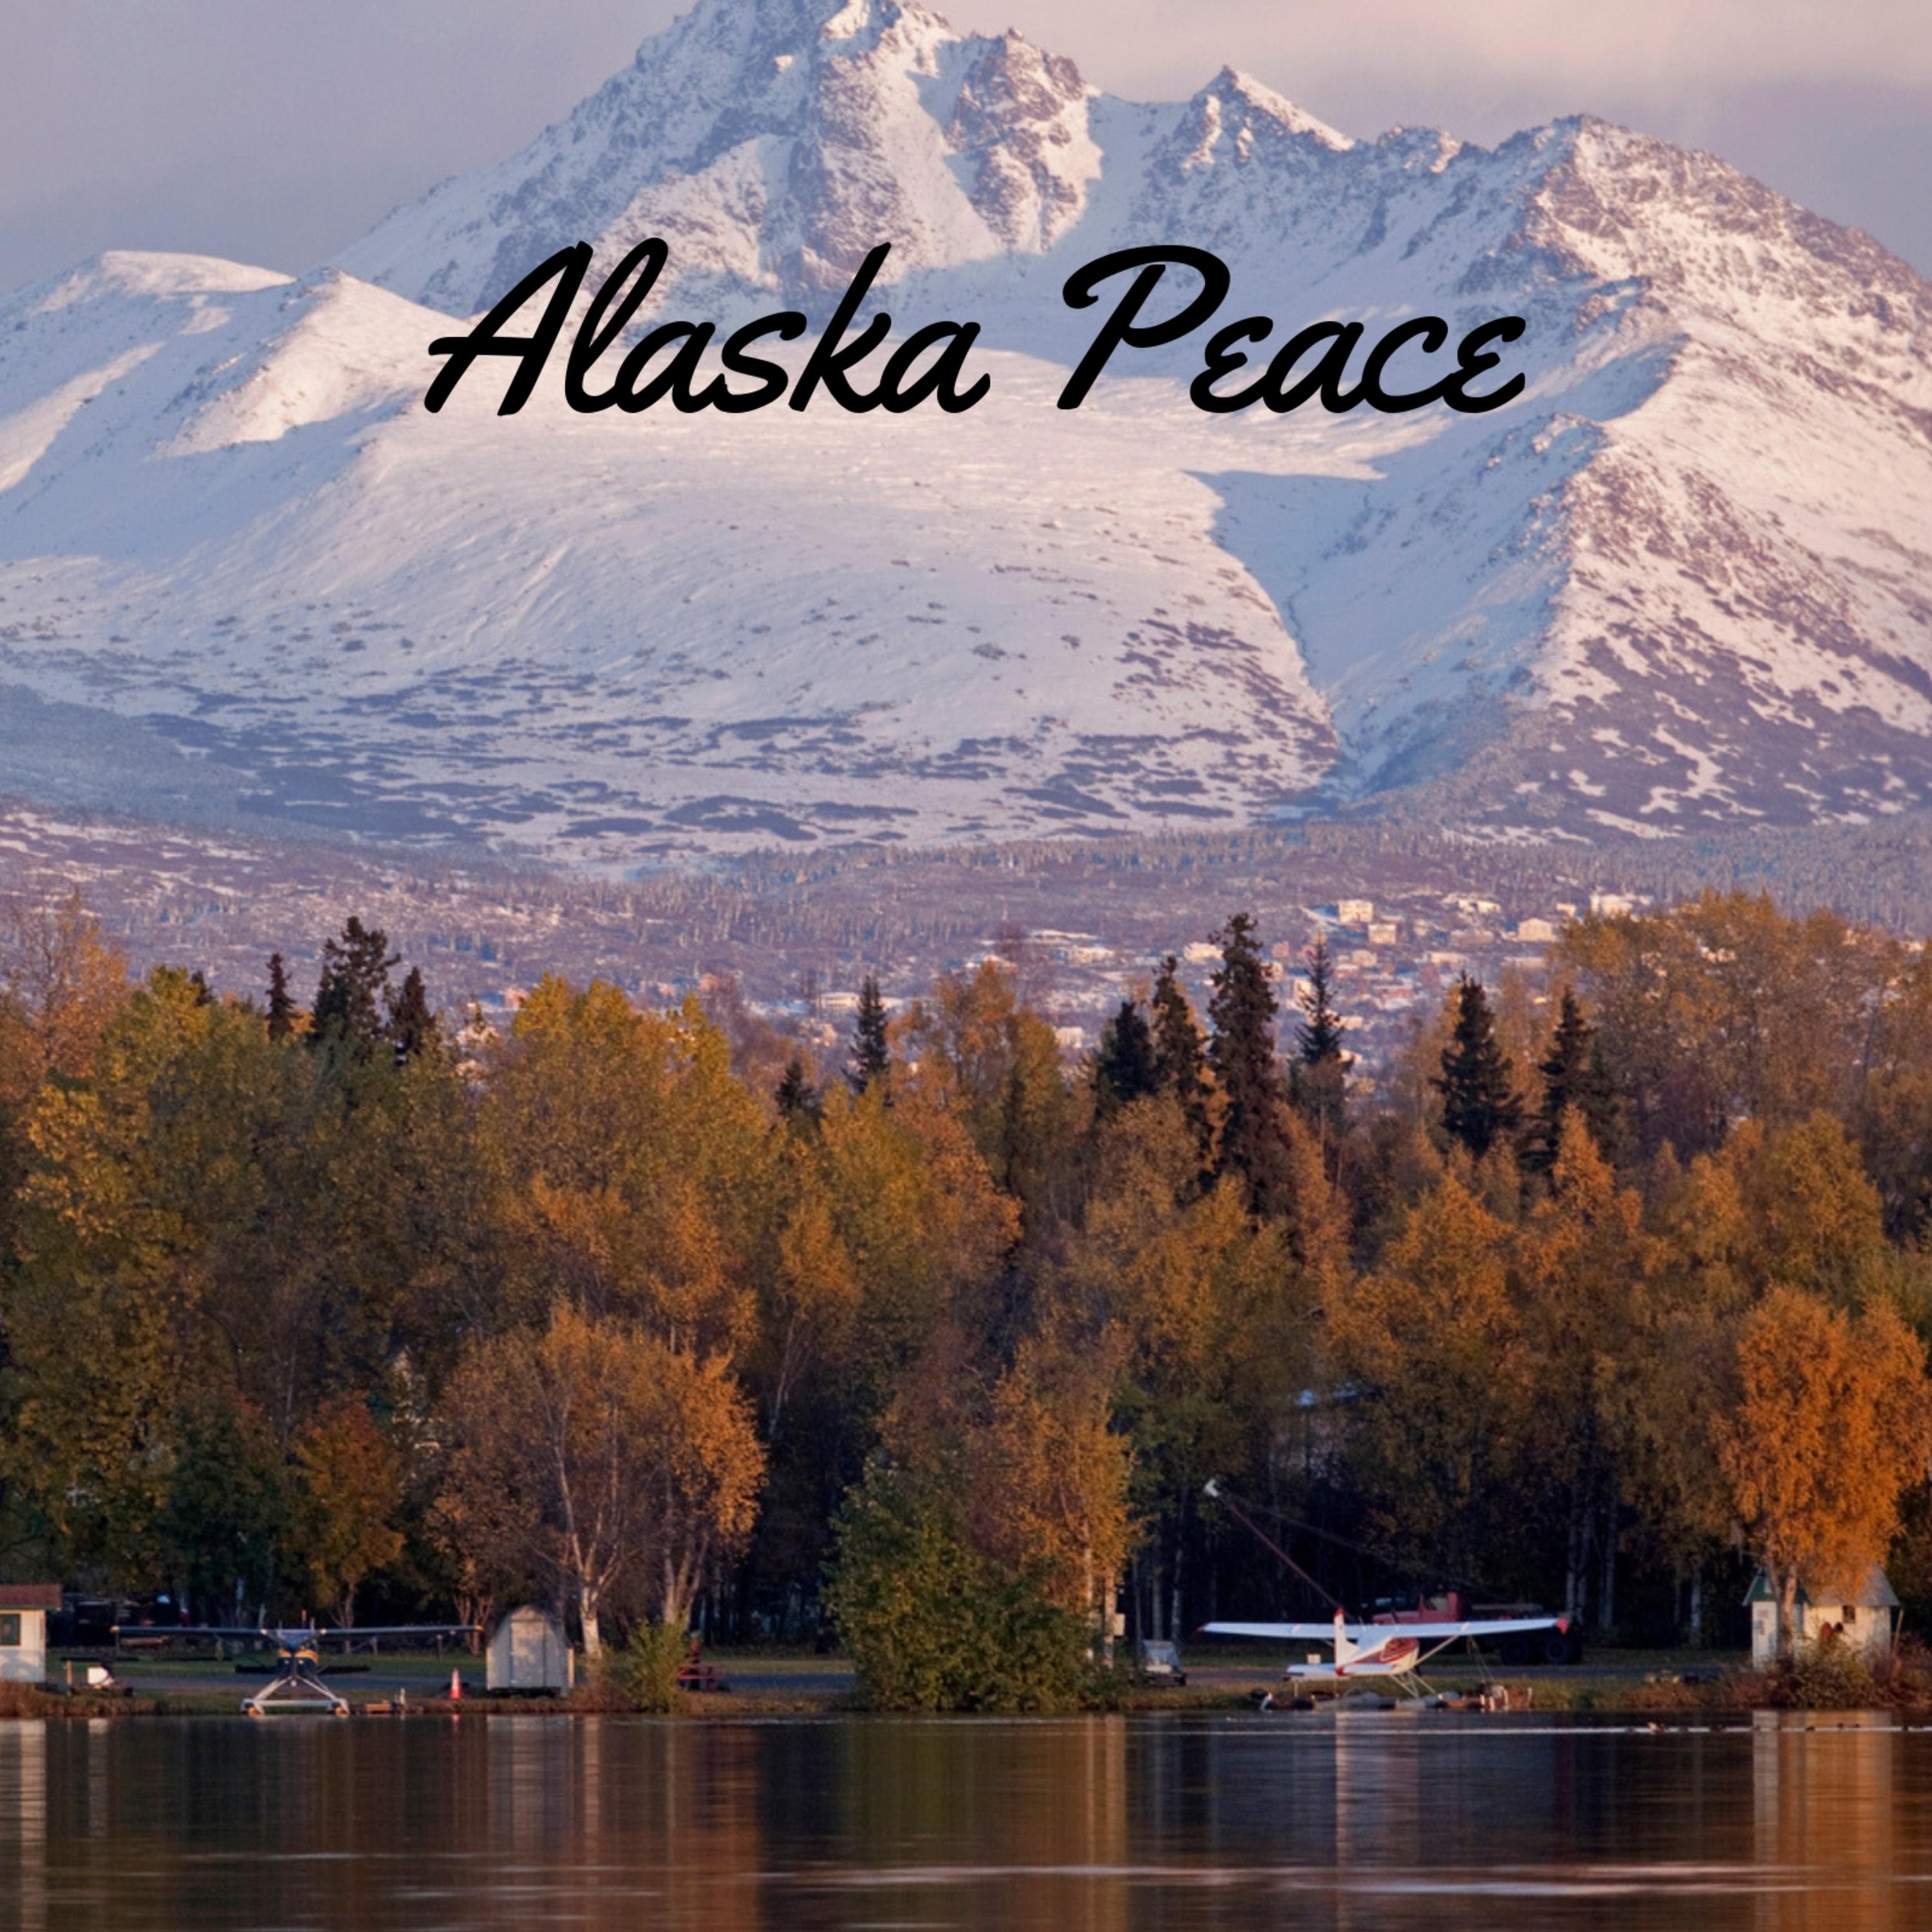 Alaska Peace